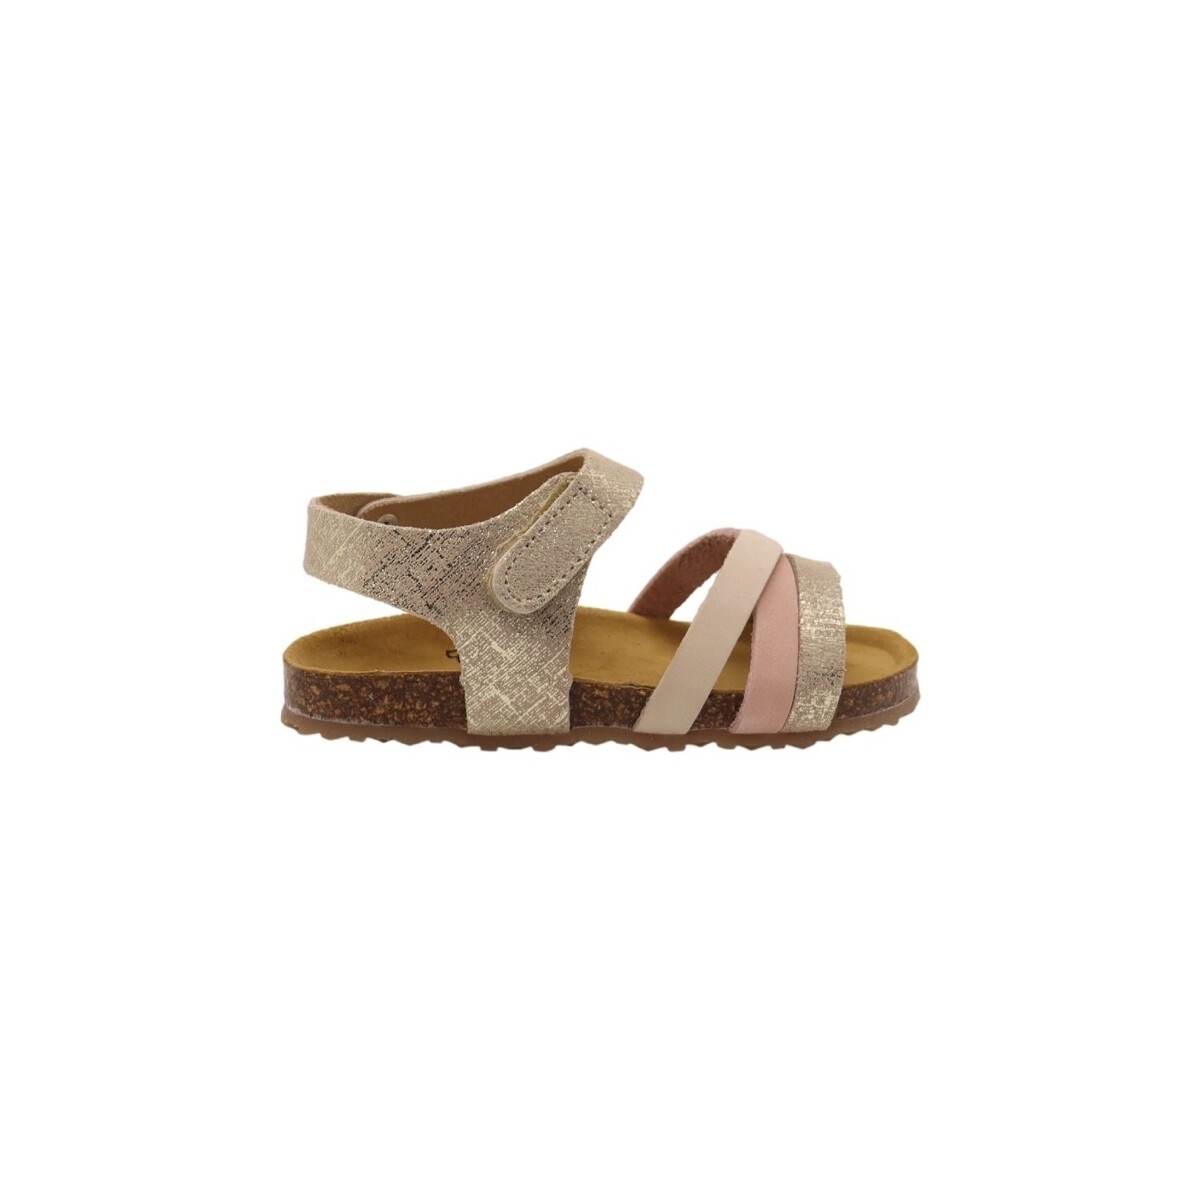 Σανδάλια Plakton Party Sandals – Beige/Salmon/Beige